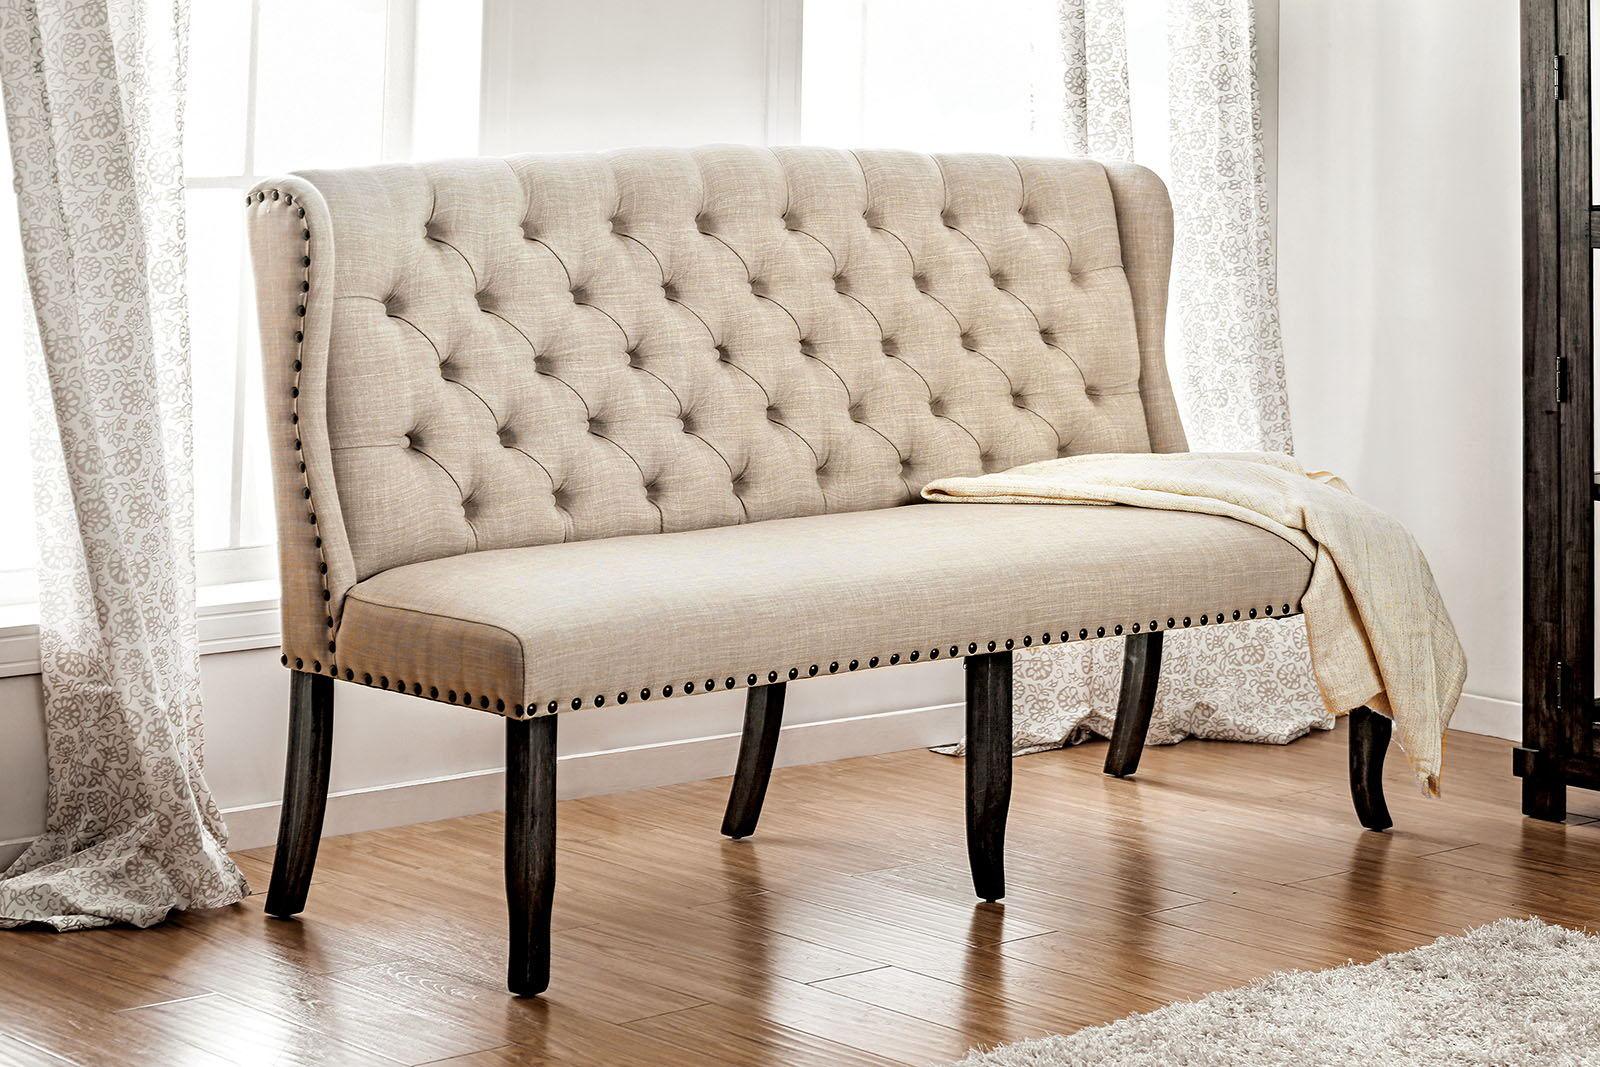 Furniture of America - Sania - 3 Seater Loveseat Bench - Beige - 5th Avenue Furniture